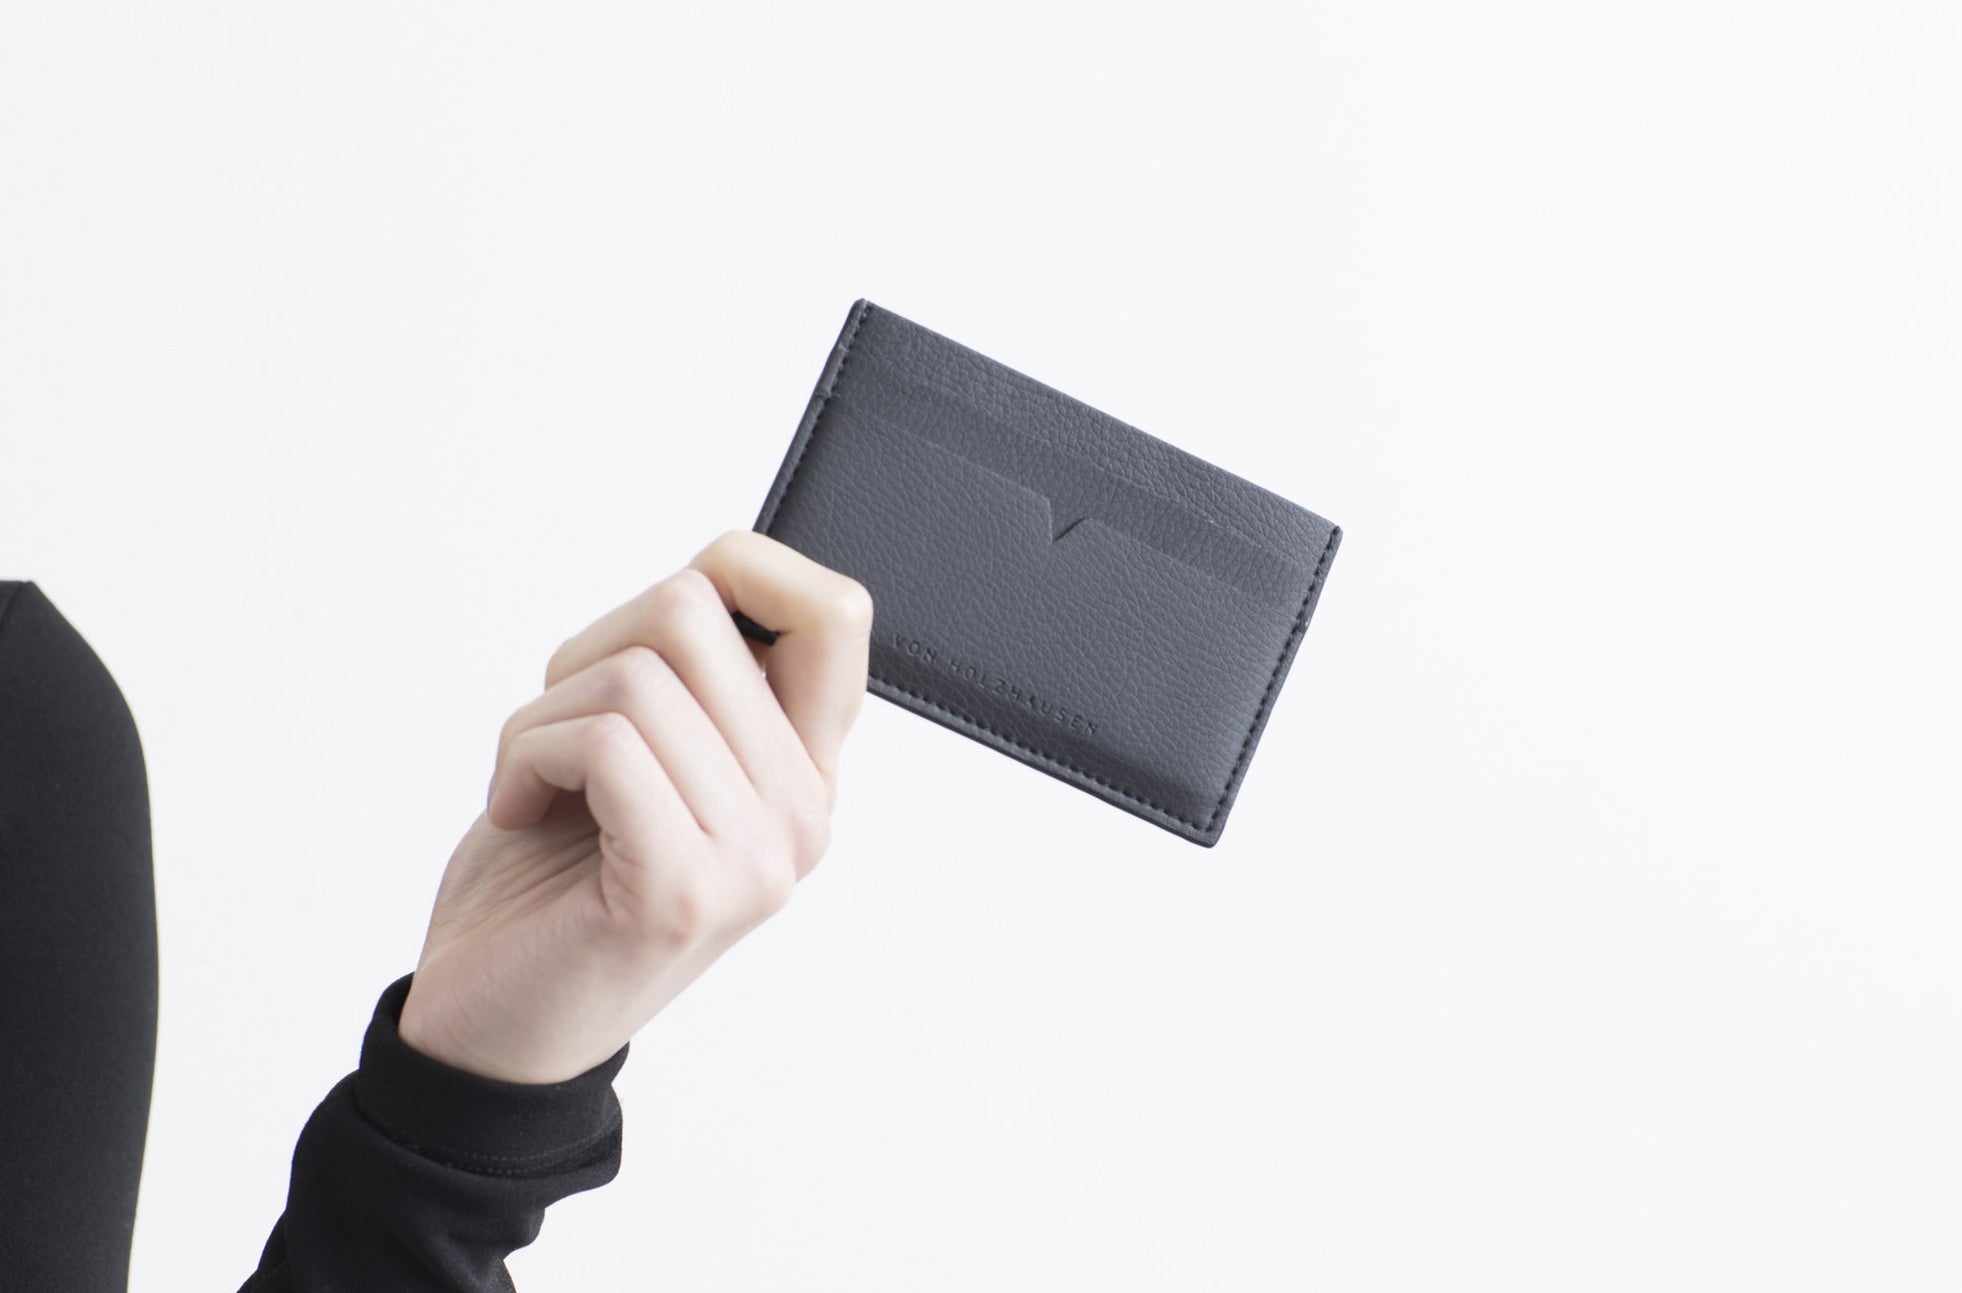 The Credit Card Holder - Sample Sale in Technik in Black image 2